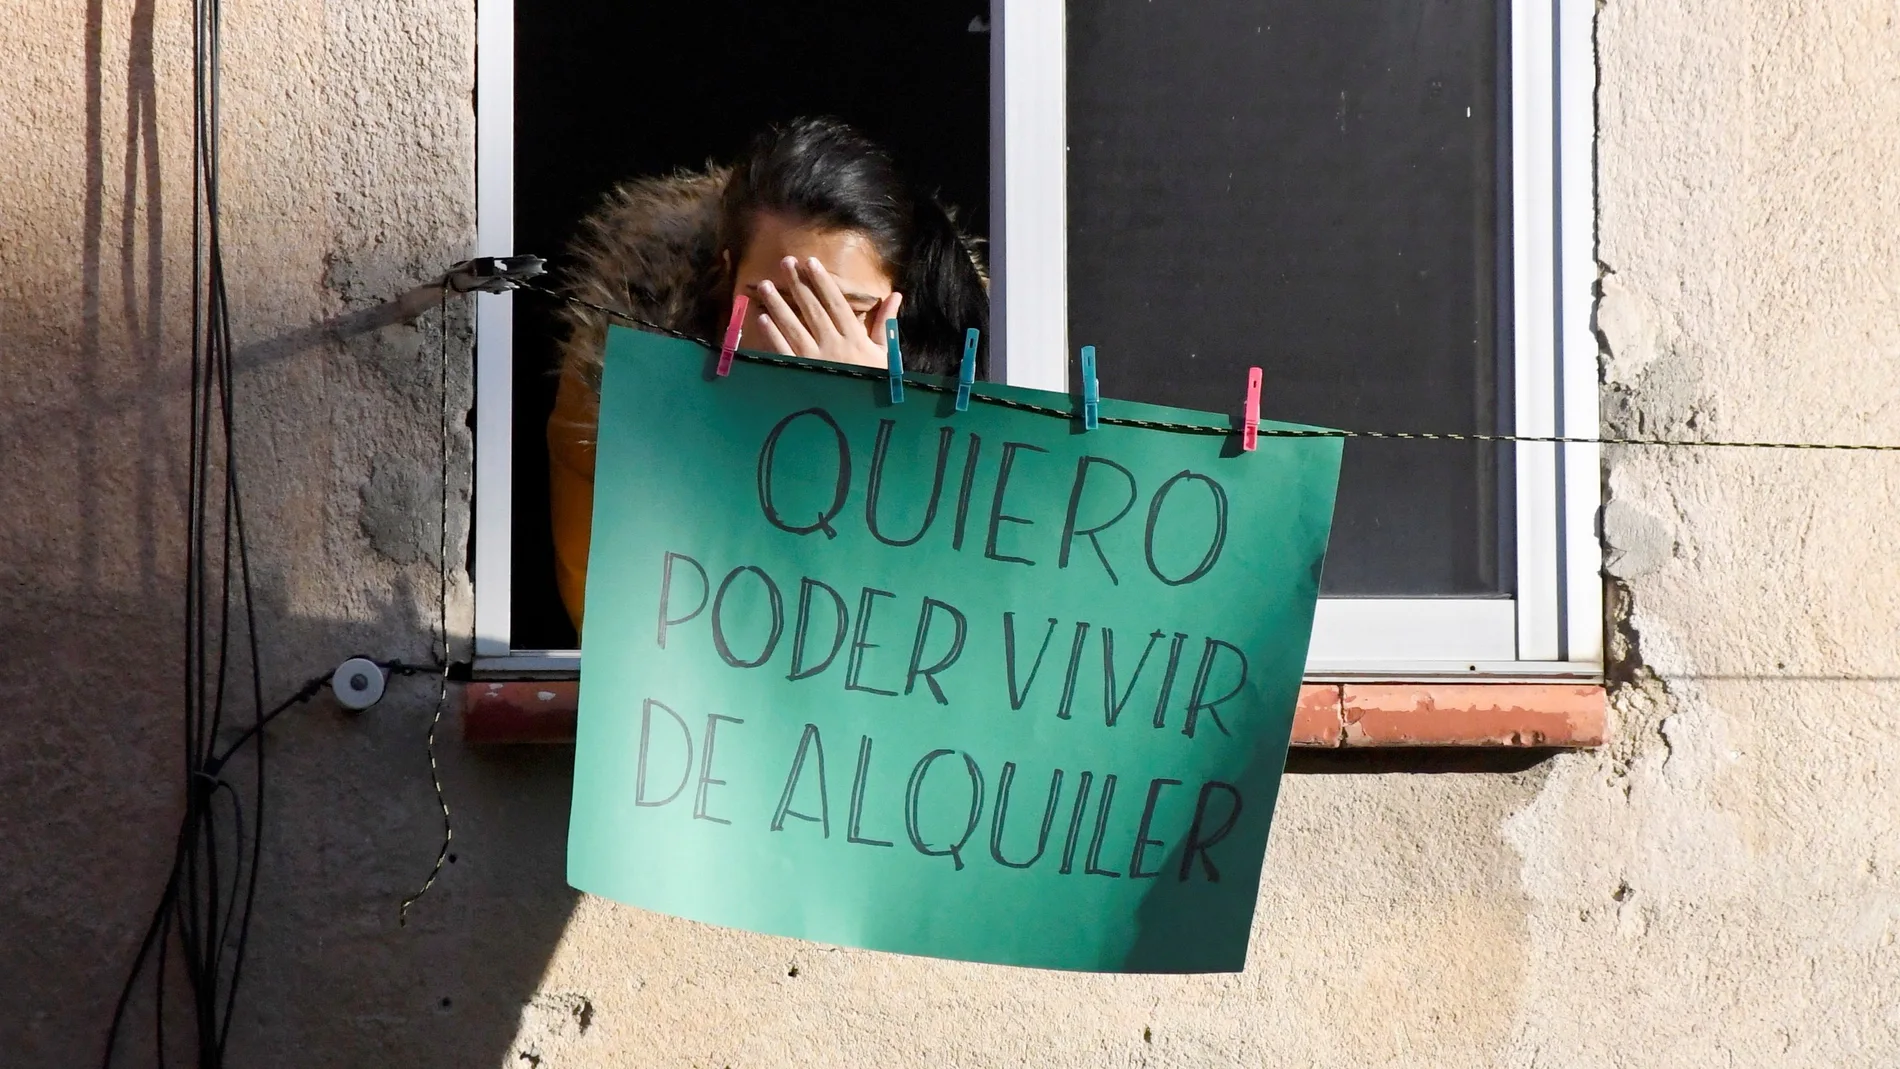 Una vecina del edificio donde se ha impedido un desahucio en Segovia este miércoles cuelga un cartel en su ventana en el que se lee "quiero poder vivir de alquiler".